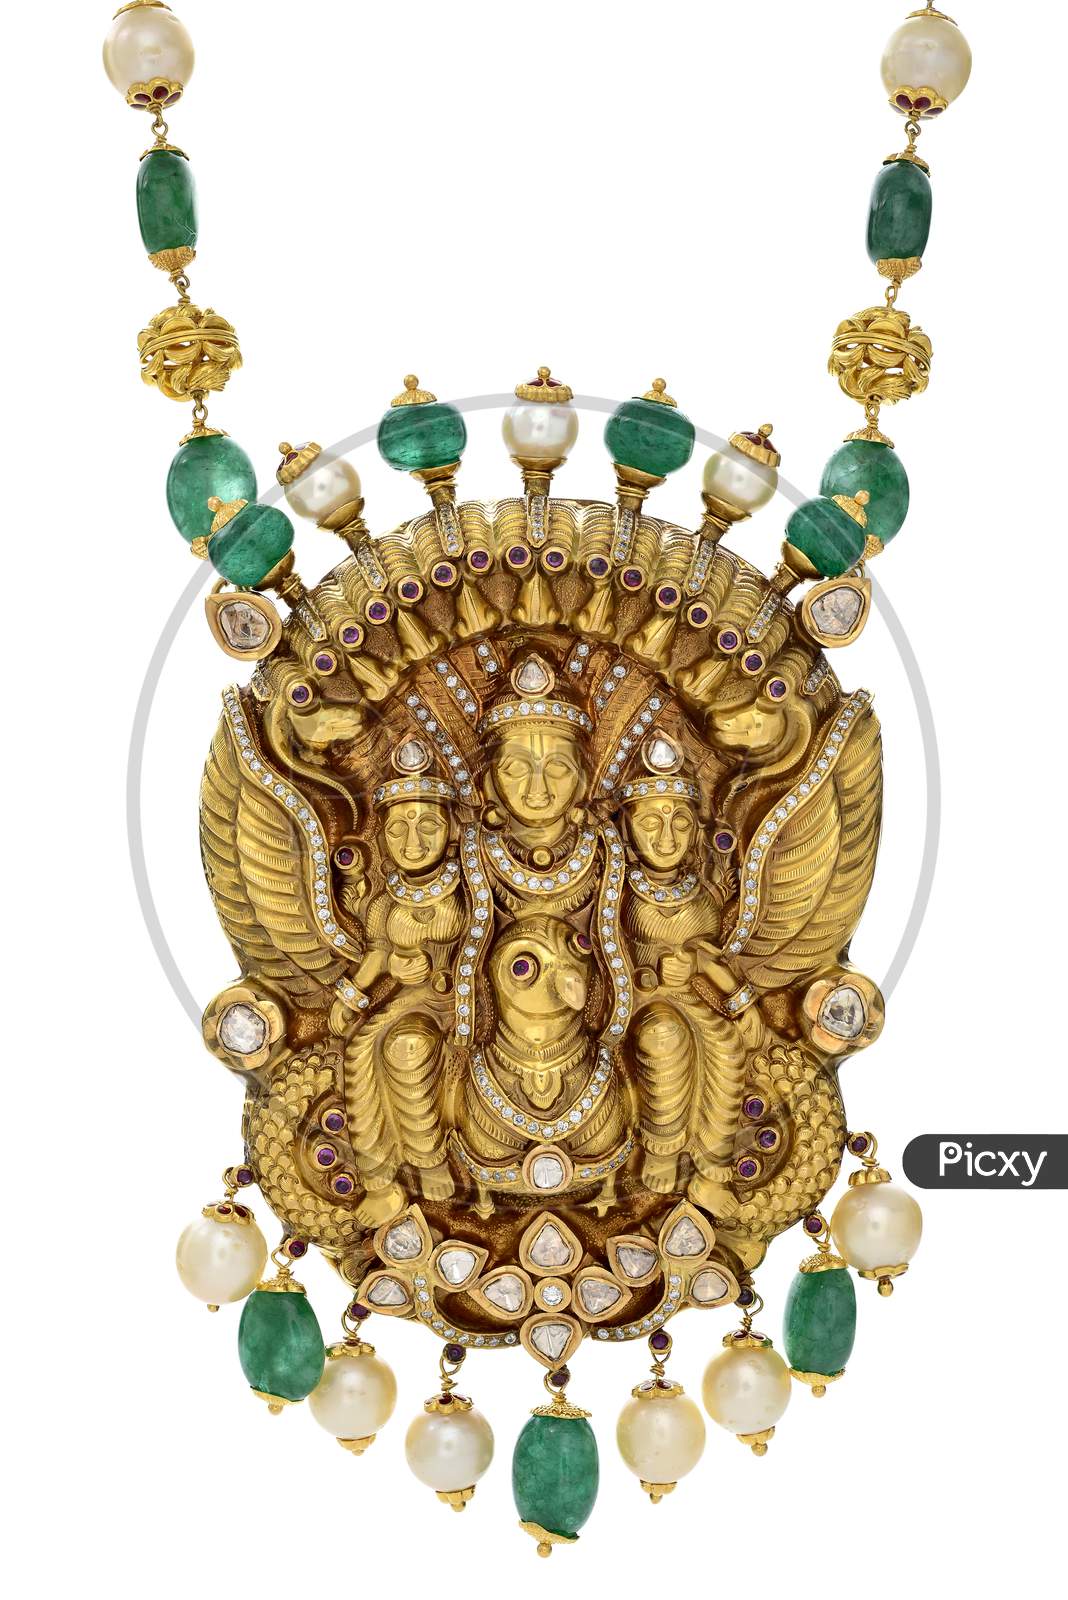 Goddess embedded gold coated pendant